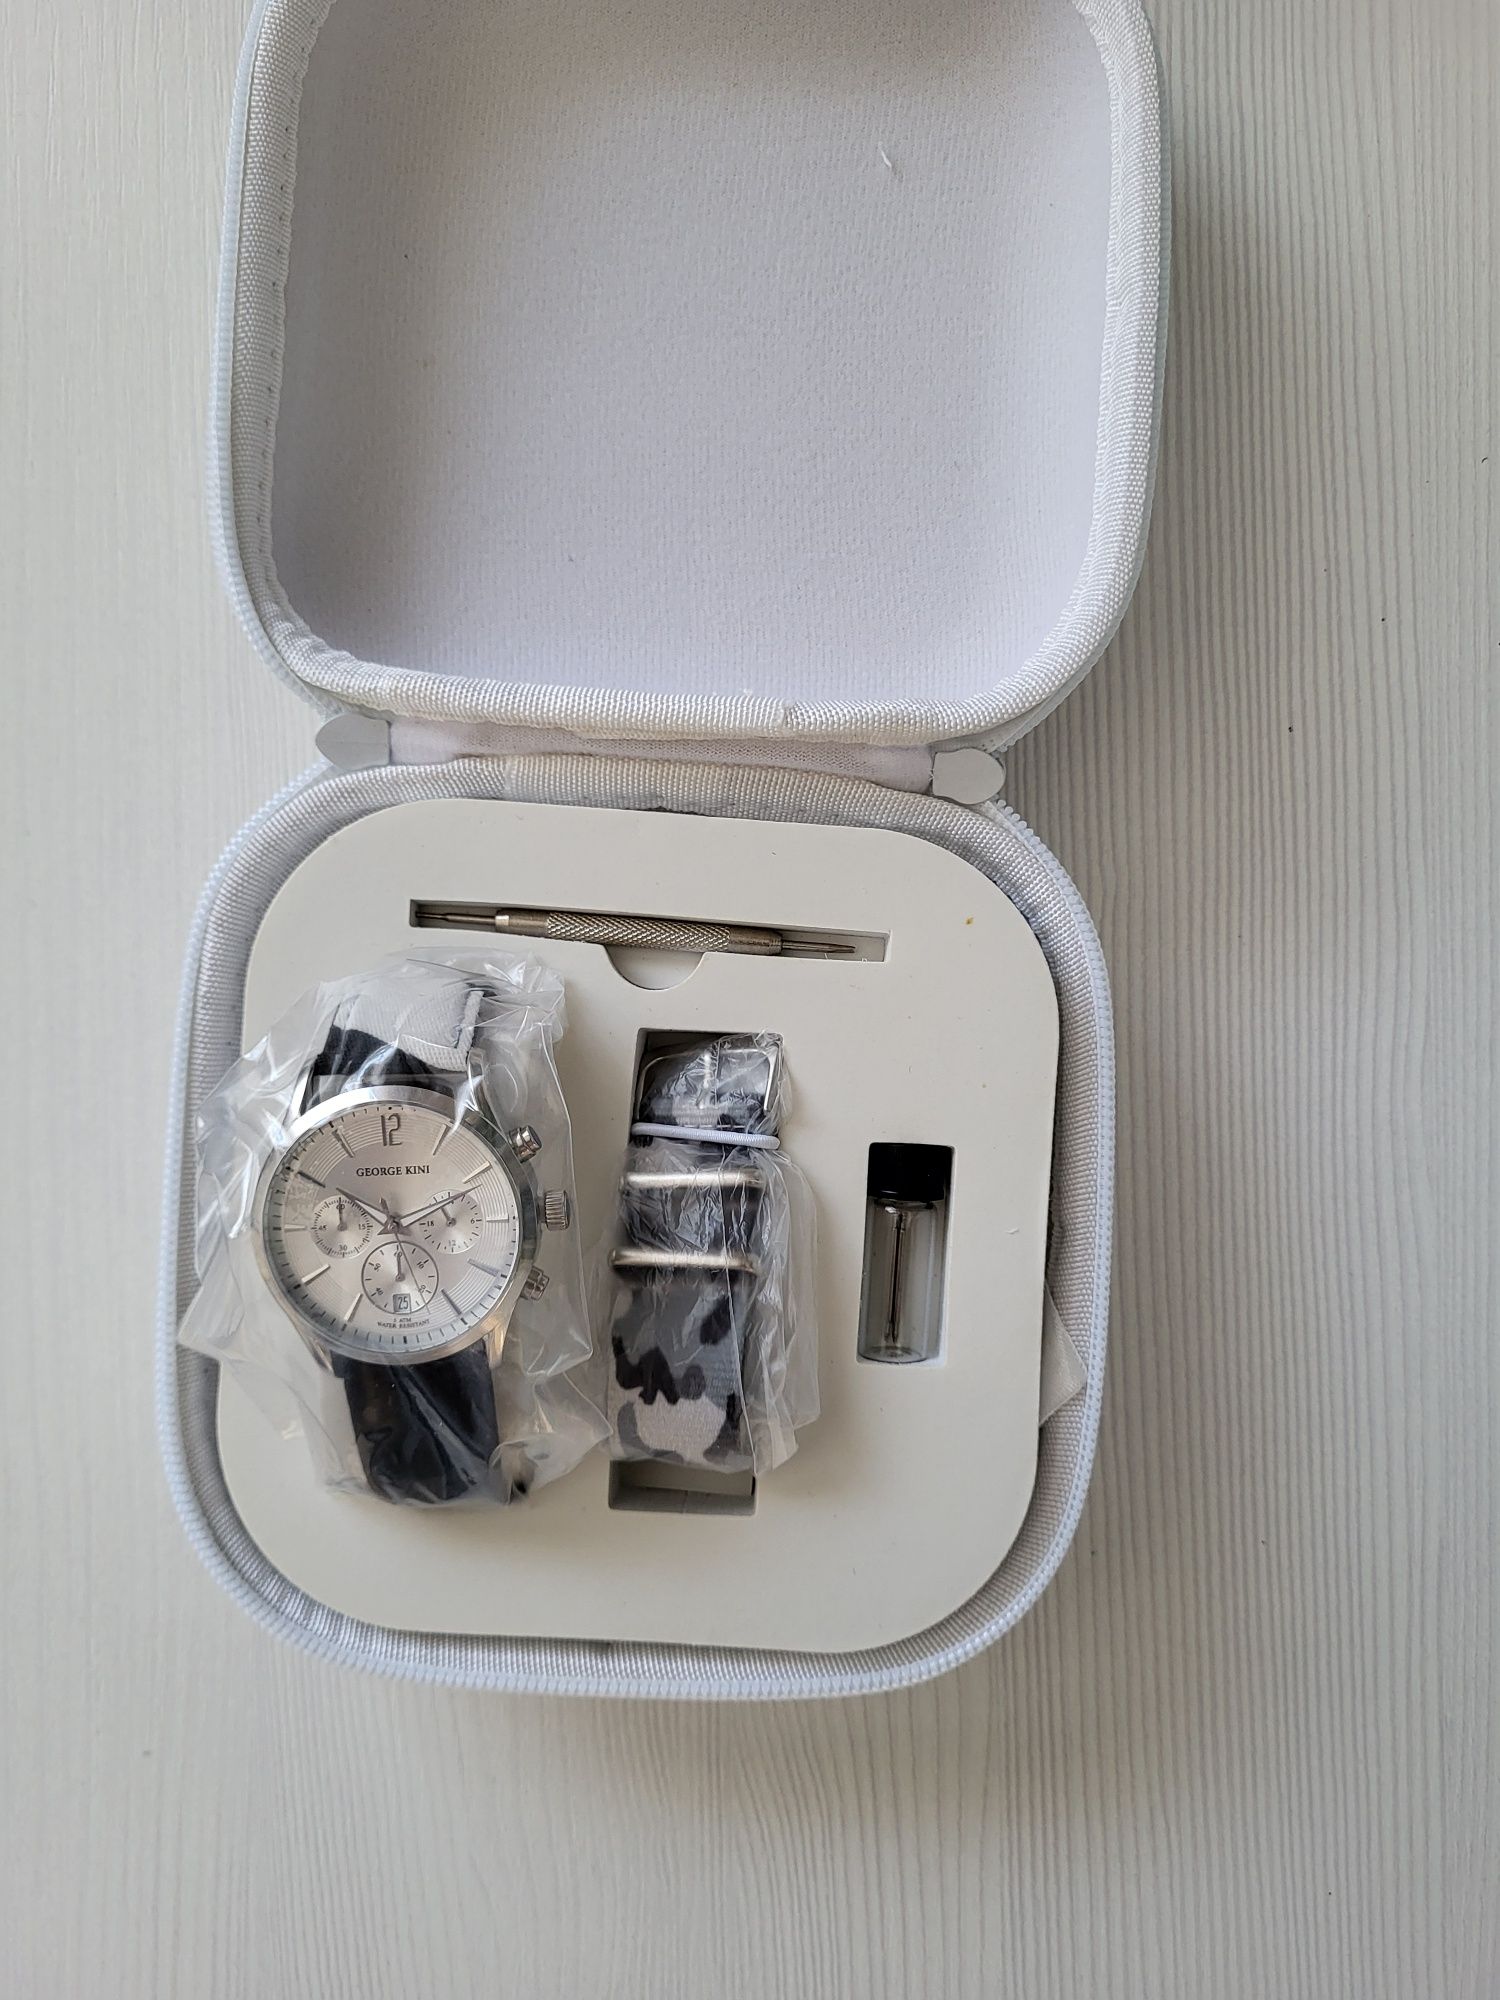 Мужские наручные часы GEORGE KINI, новые, торг.